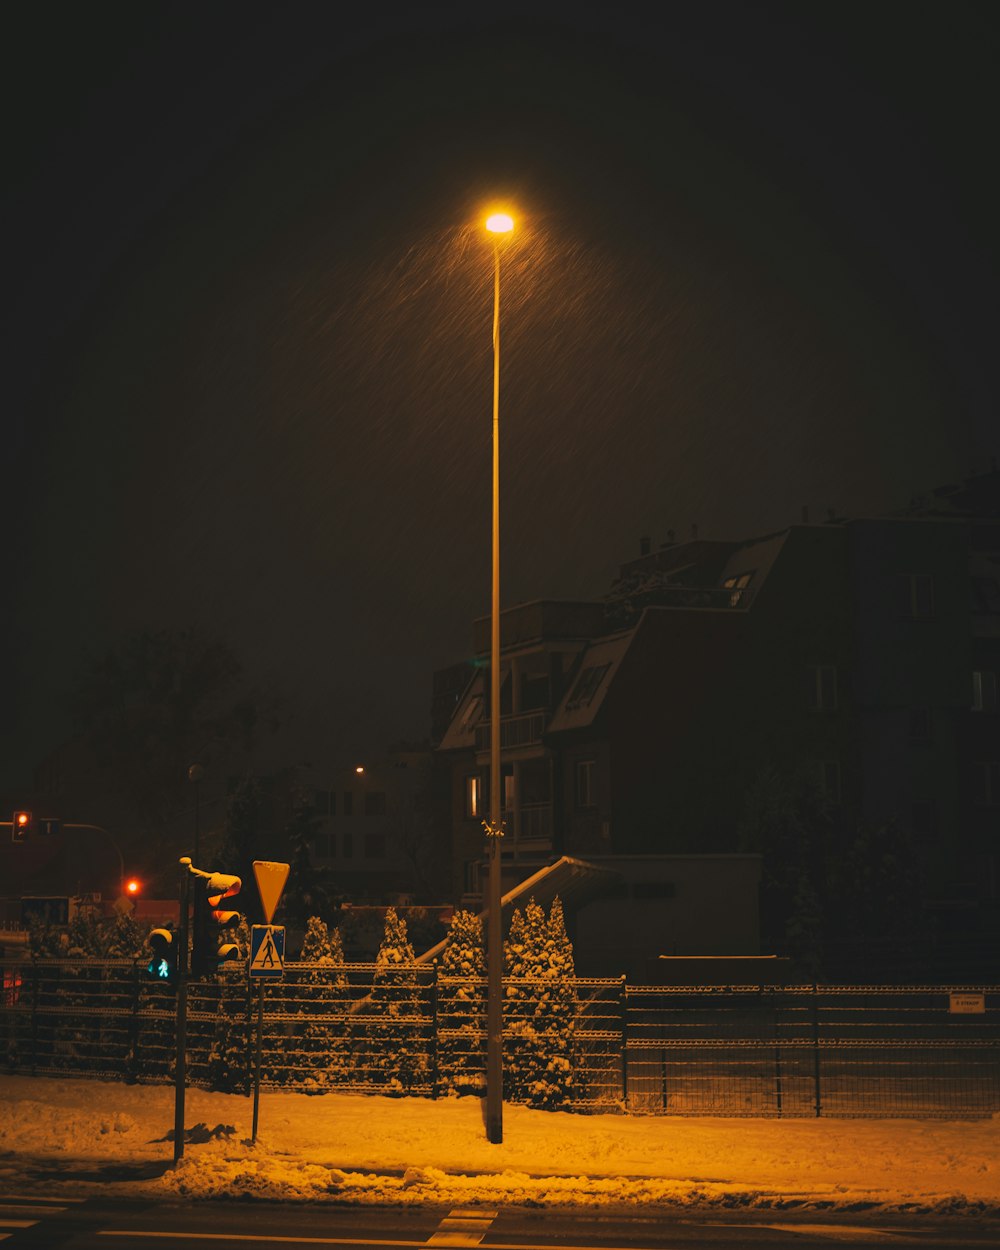 Poste de luz blanca cerca de la casa de madera marrón durante la noche